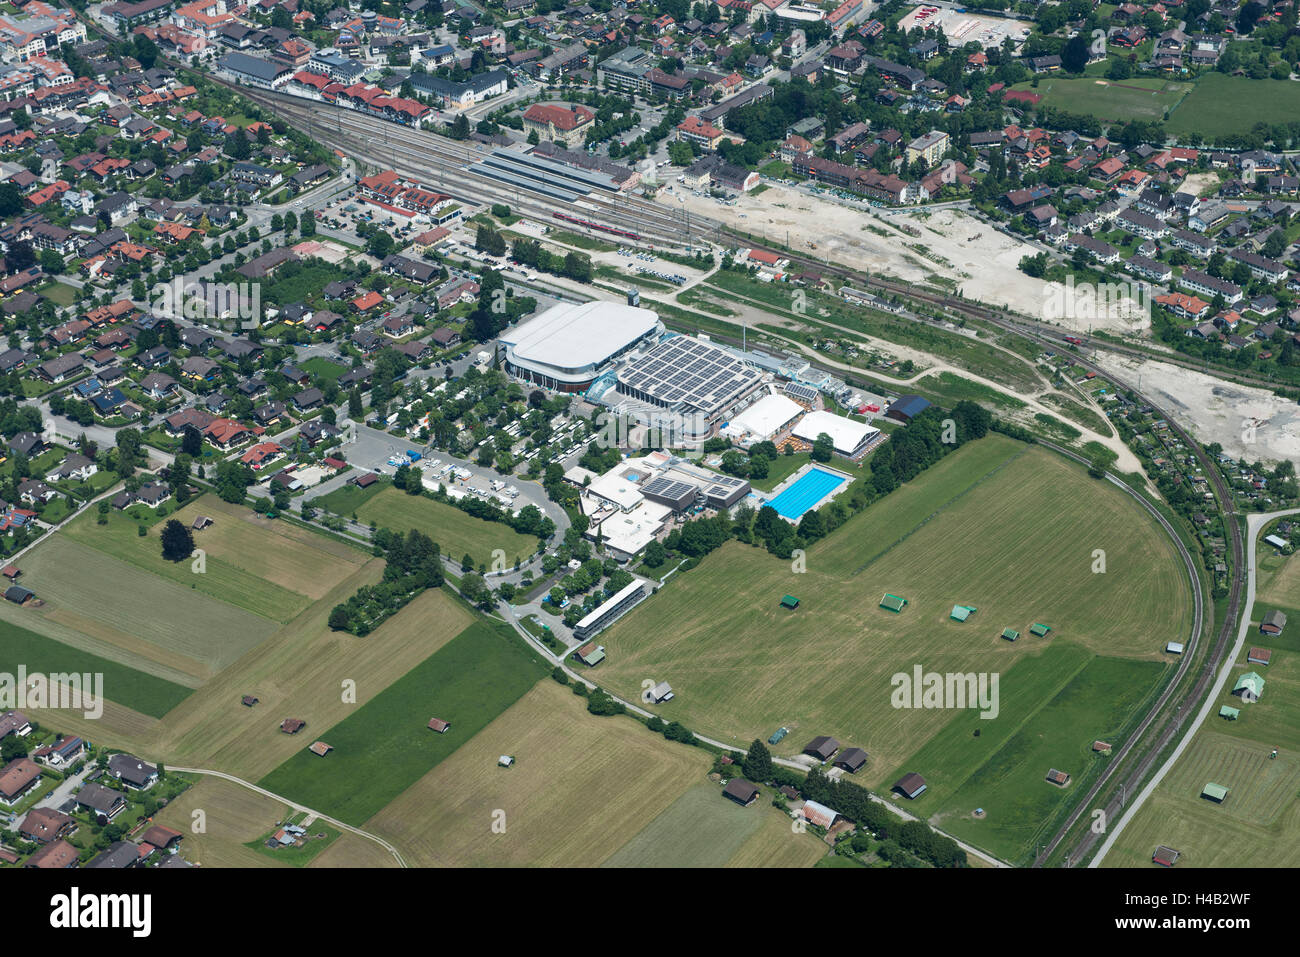 Sommet 2015 du G7, G7 centre de presse olympique, centre de sports de glace, coalition pour l'action Arrêter G7-Elmau, Garmisch-Partenkirchen, vue aérienne, la Haute-Bavière, Bavière, Allemagne Banque D'Images